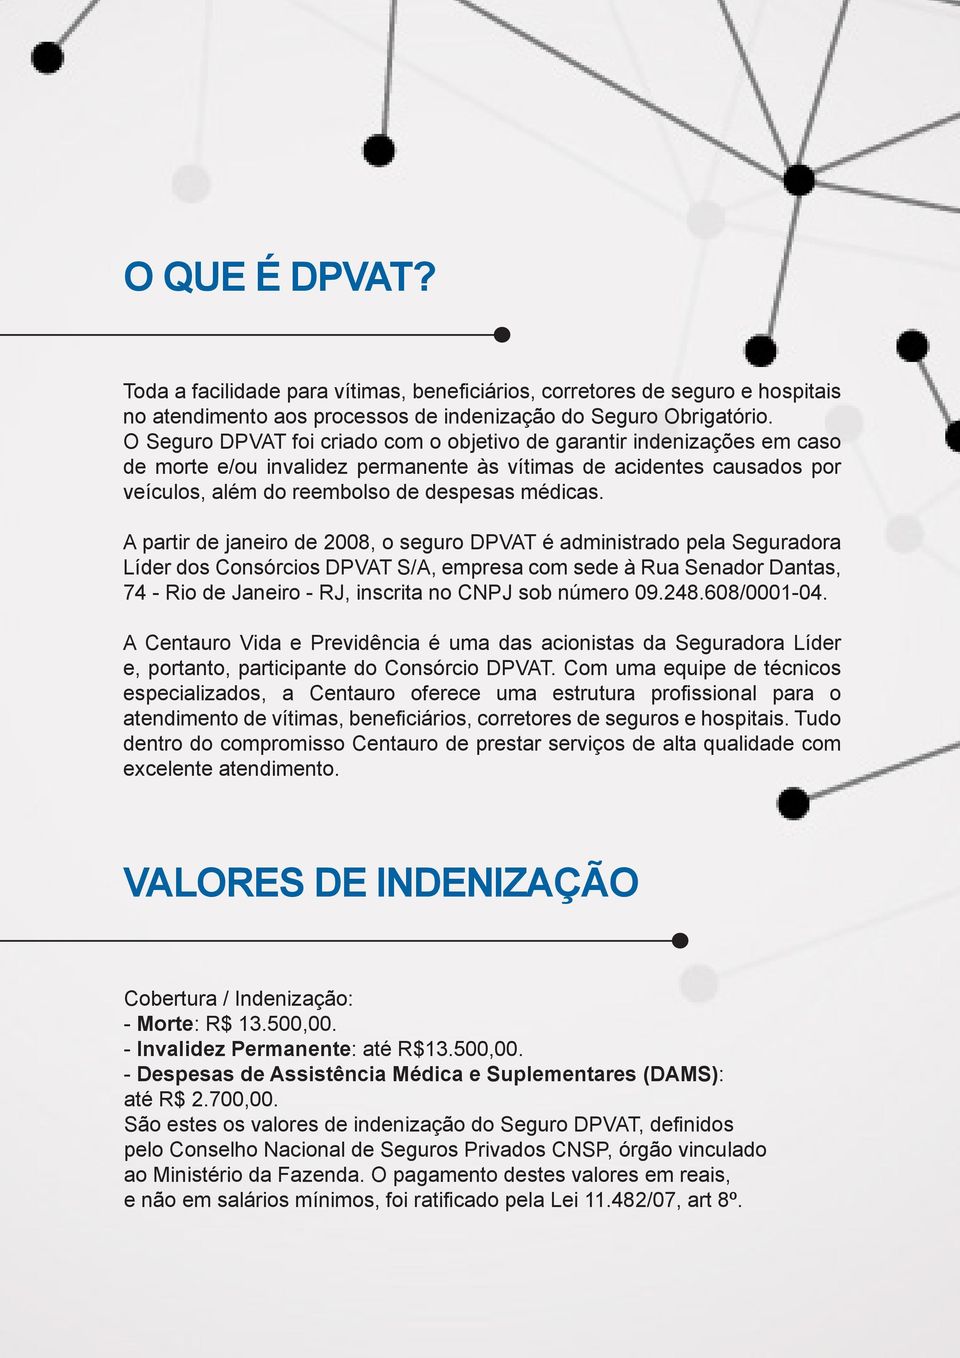 A partir de janeiro de 2008, o seguro DPVAT é administrado pela Seguradora Líder dos Consórcios DPVAT S/A, empresa com sede à Rua Senador Dantas, 74 - Rio de Janeiro - RJ, inscrita no CNPJ sob número